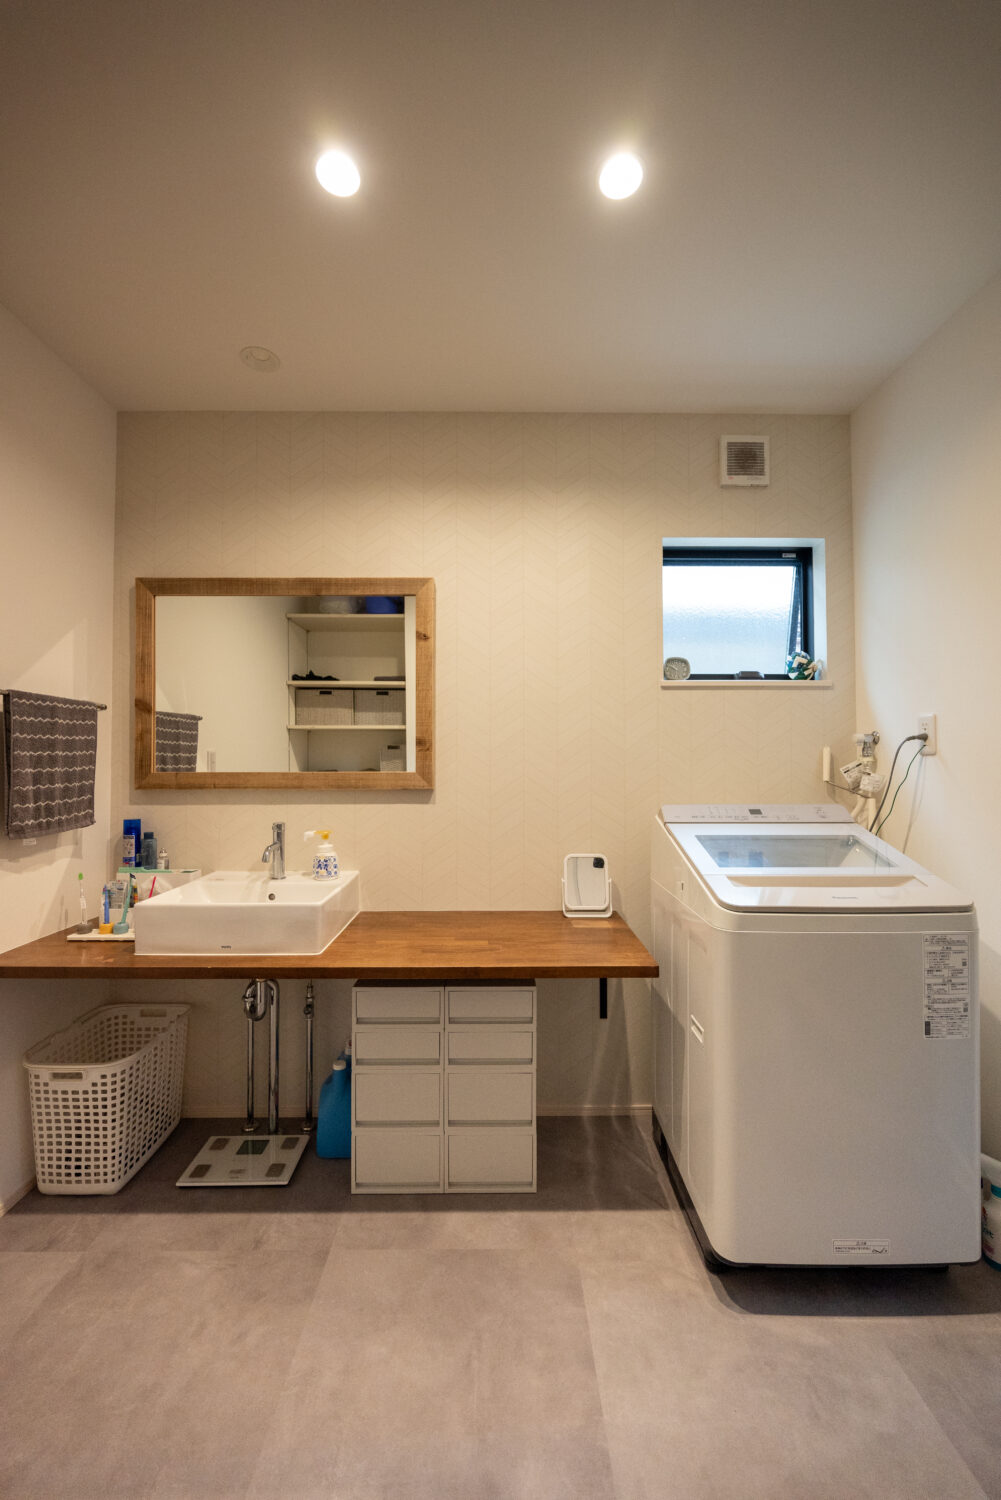 アイデザインホーム
注文住宅
広島県三原市
洗面カウンターを幅広く造作し、メイクしたり洗濯物を畳んだり、様々な用途で便利に使えるようにしています